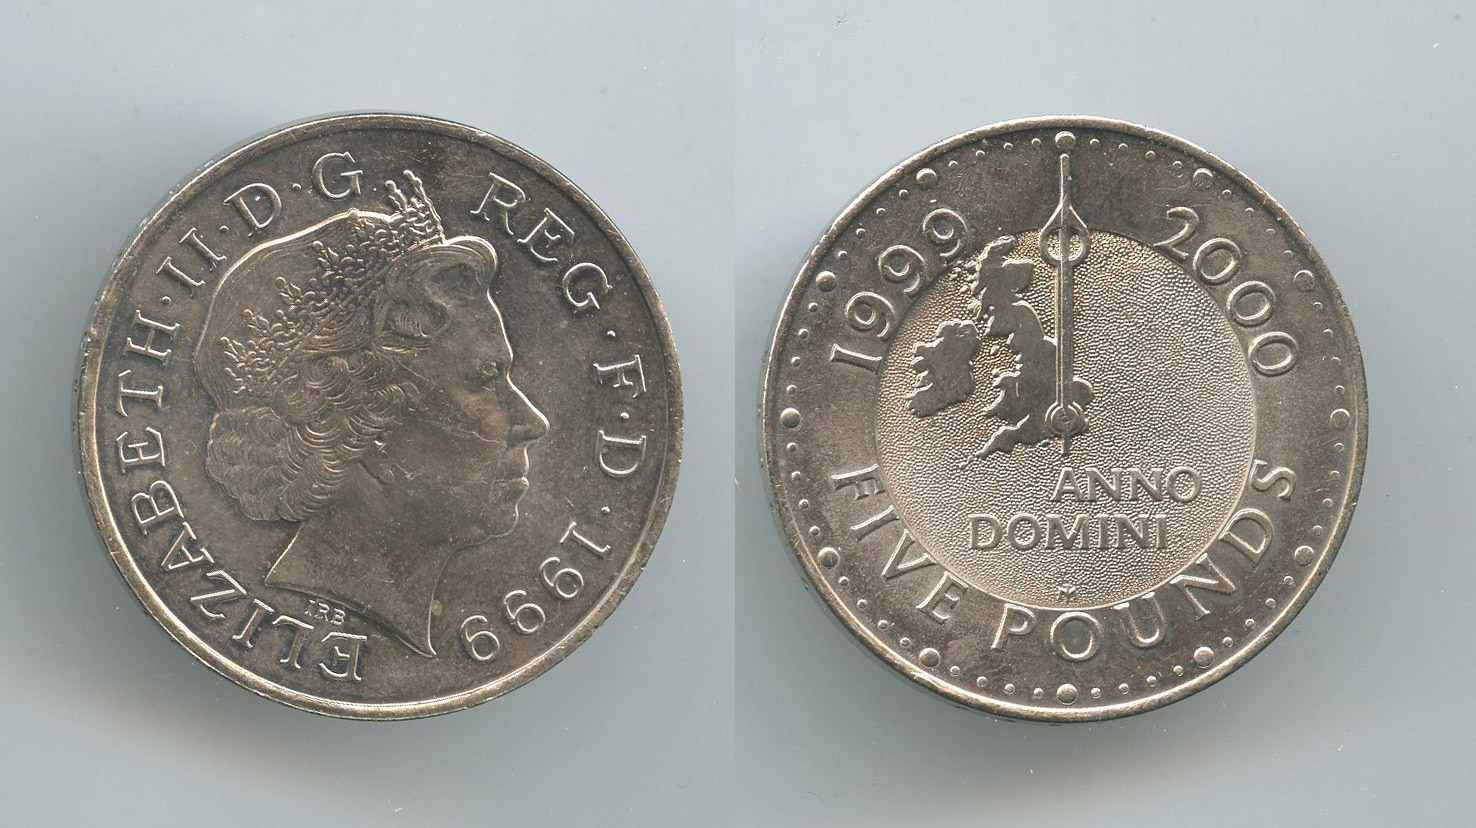 REGNO UNITO, Elizabeth II (1952-2022) 5 Pounds 1999 "Millennium Anno Domini"